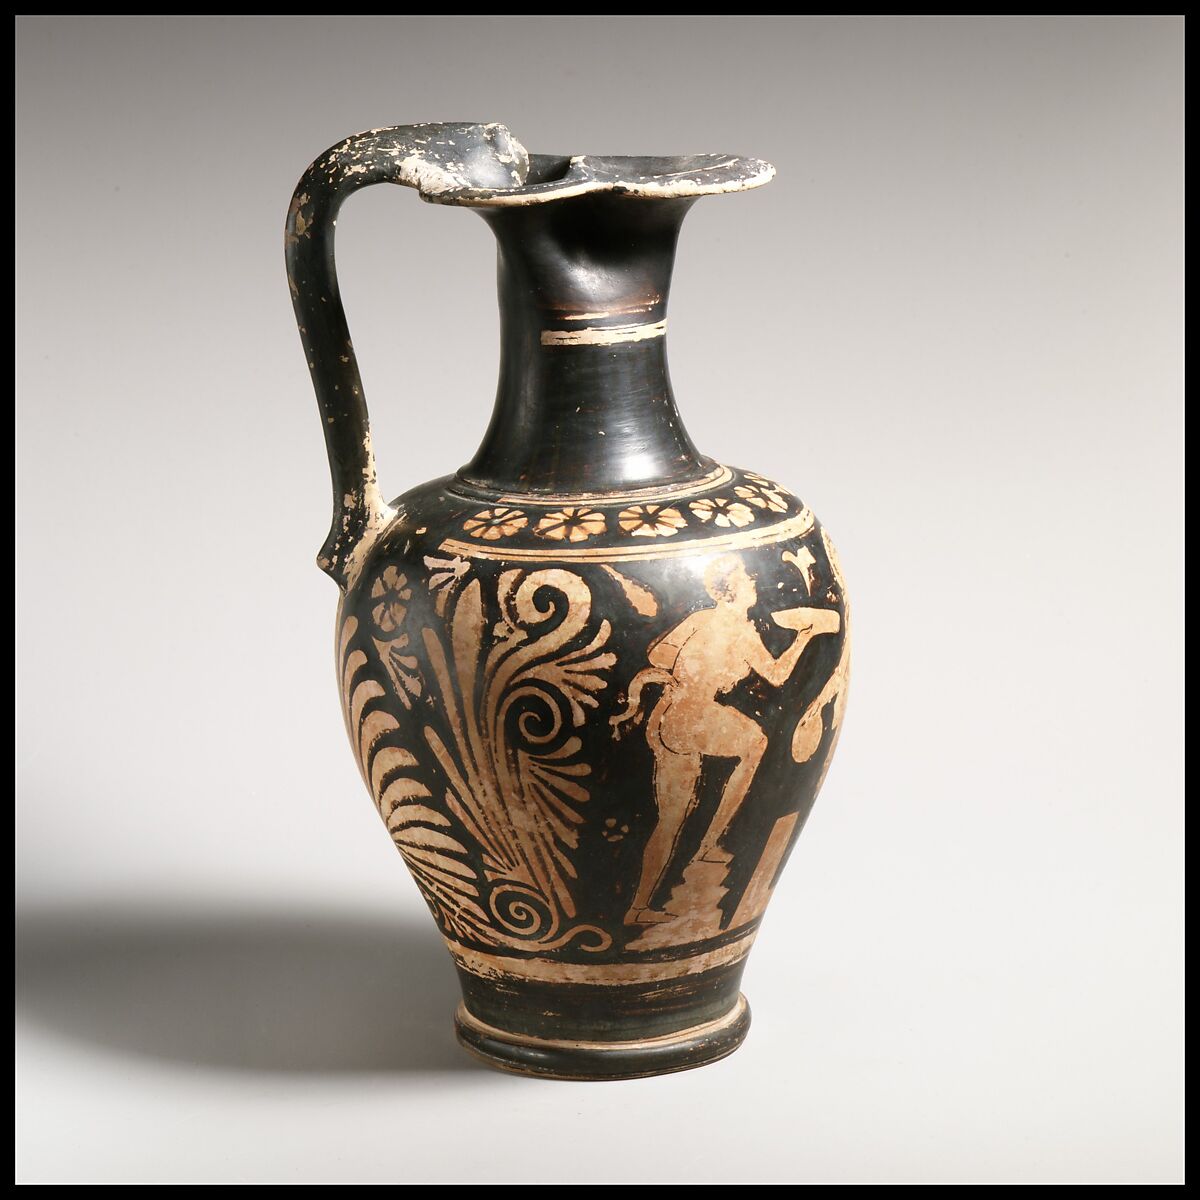 Terracotta oinochoe (jug), Attributed to the Group of Zurich 2657, Terracotta, Greek, South Italian, Apulian 